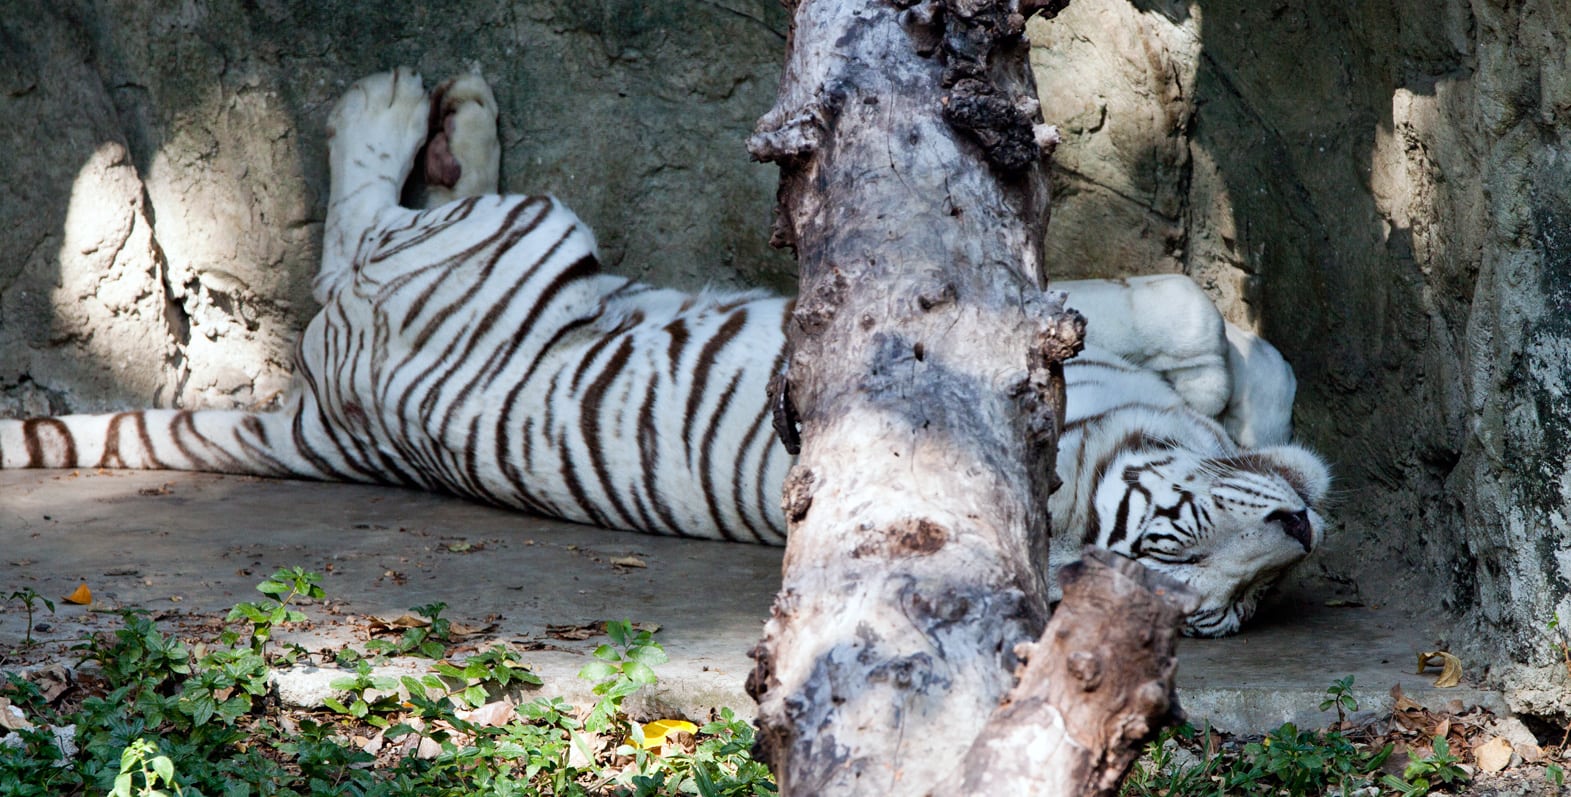 اهم الانشطة الترفيهيه و السياحية فى حديقة حيوانات دوسيت تايلاند | حديقة دوسيت تايلاند